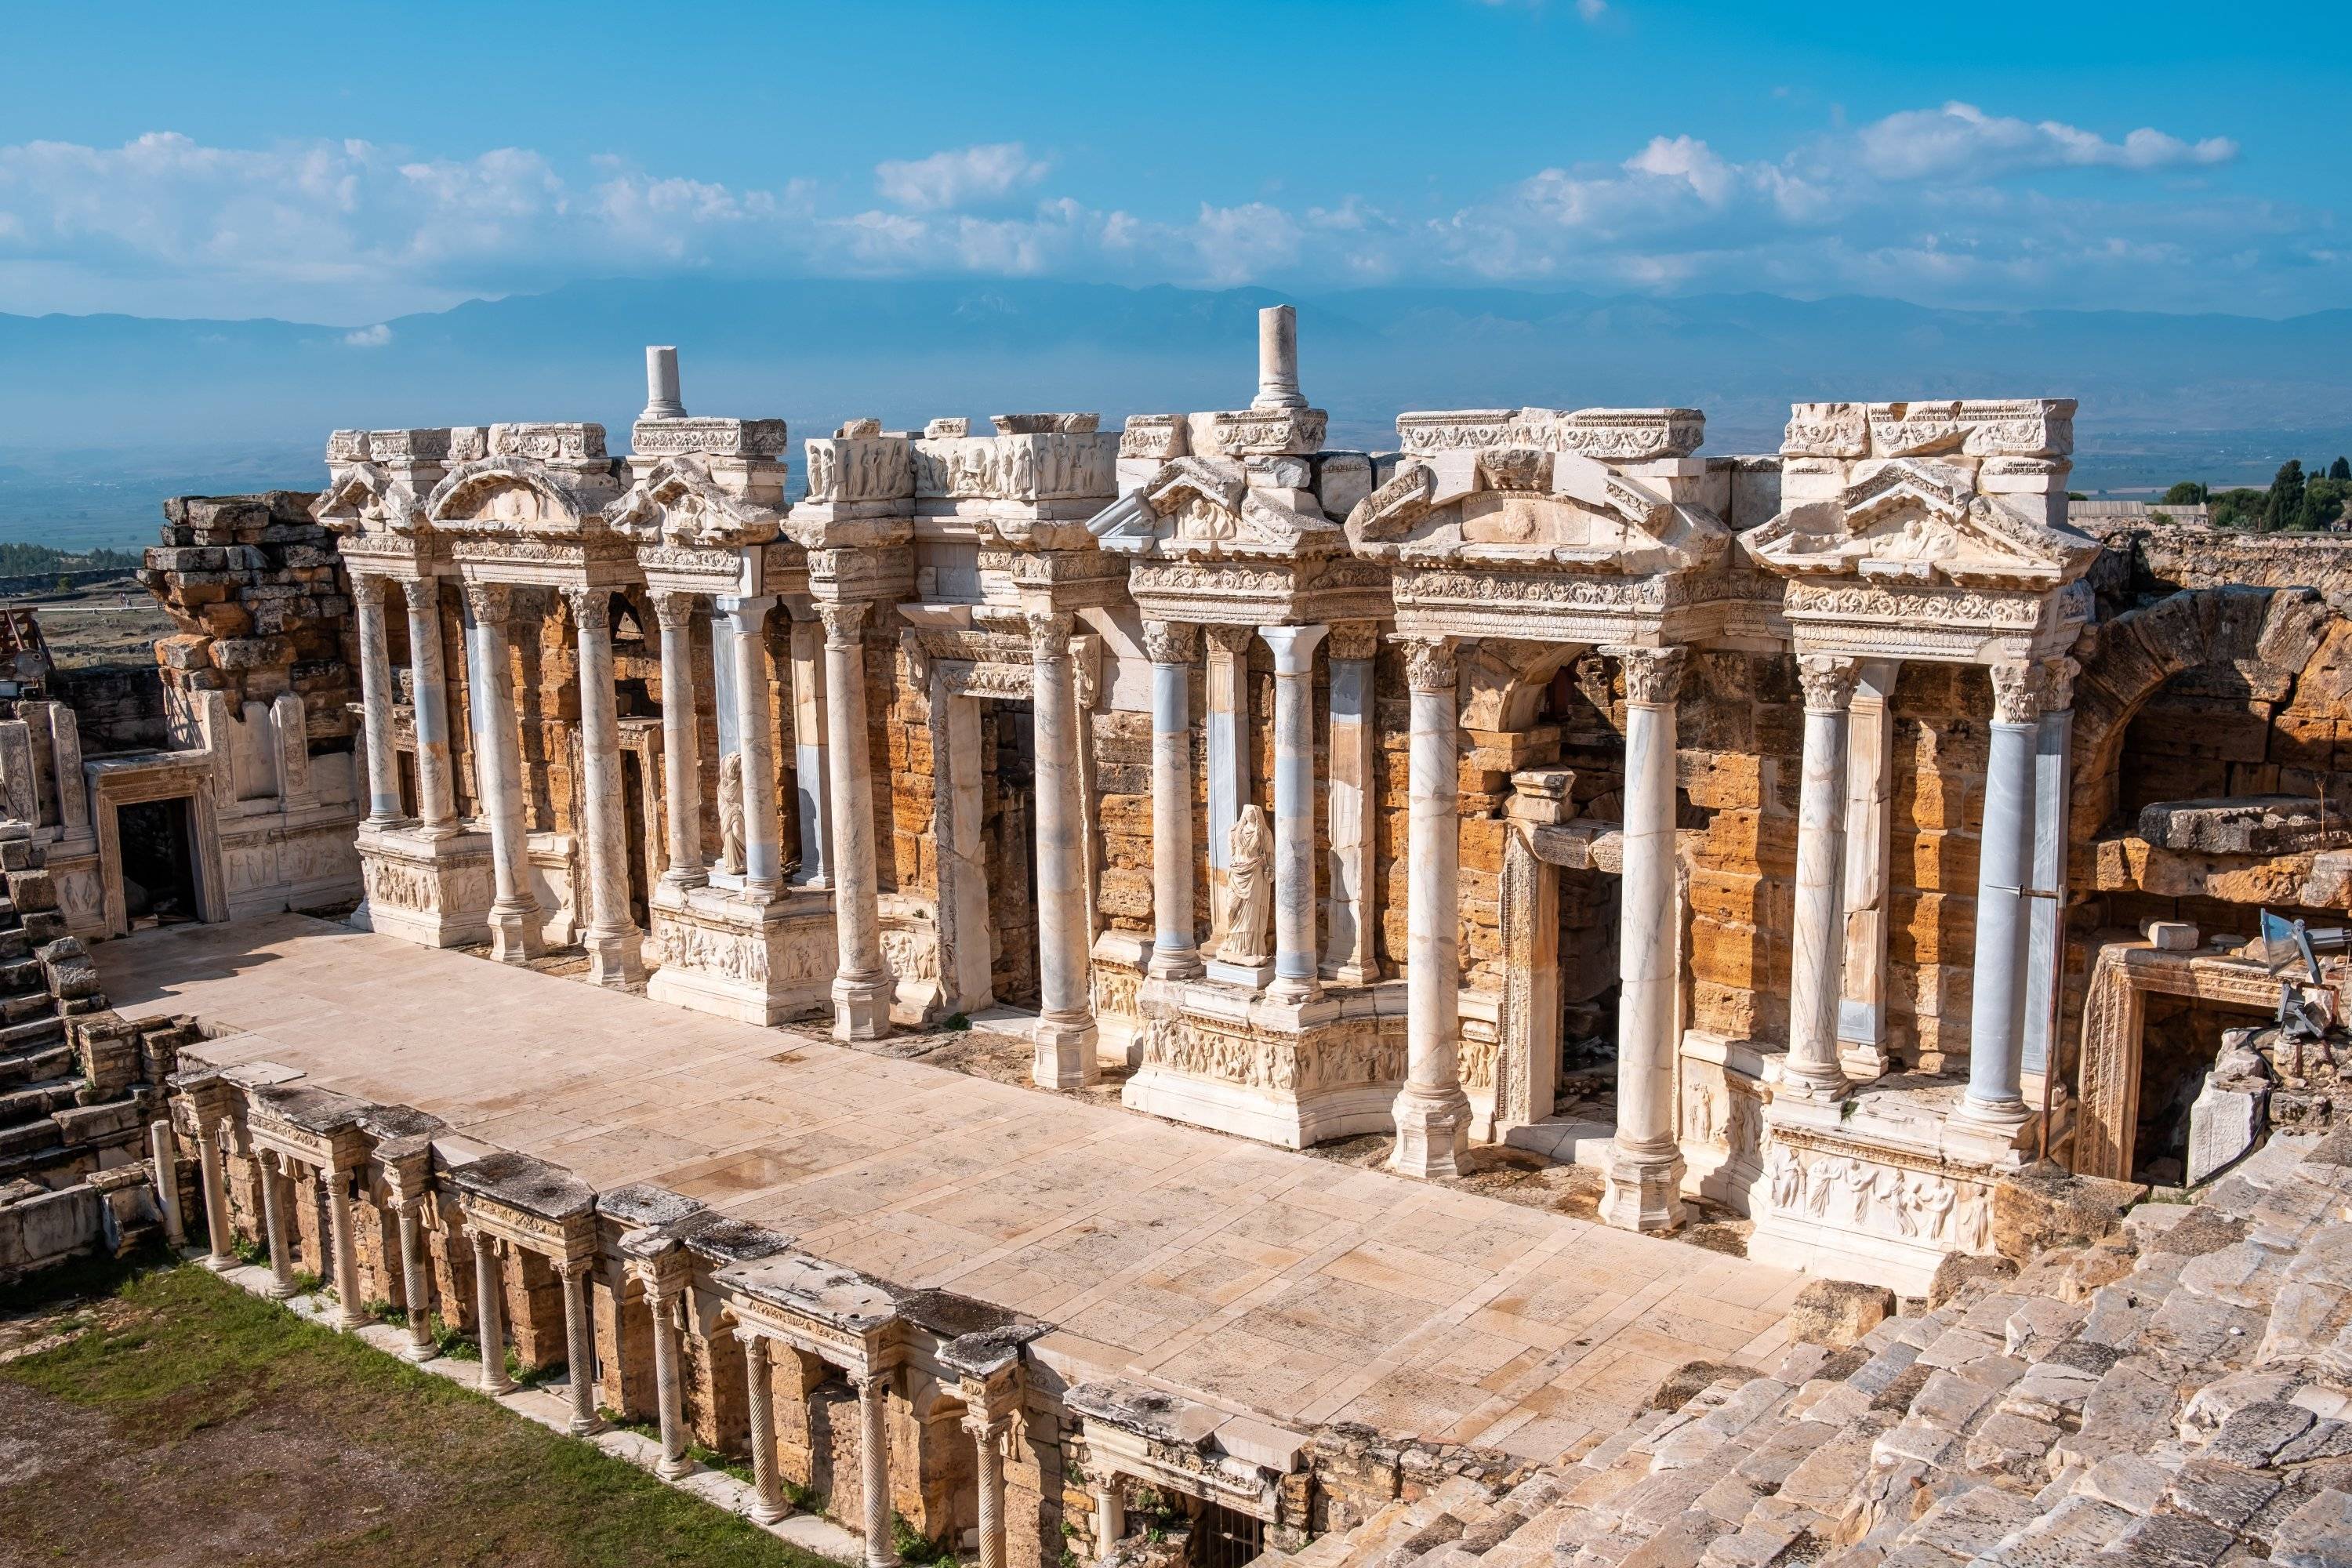 Древний город иераполис — объект юнеско и колыбель раннего христианства в турции (цены 2020)